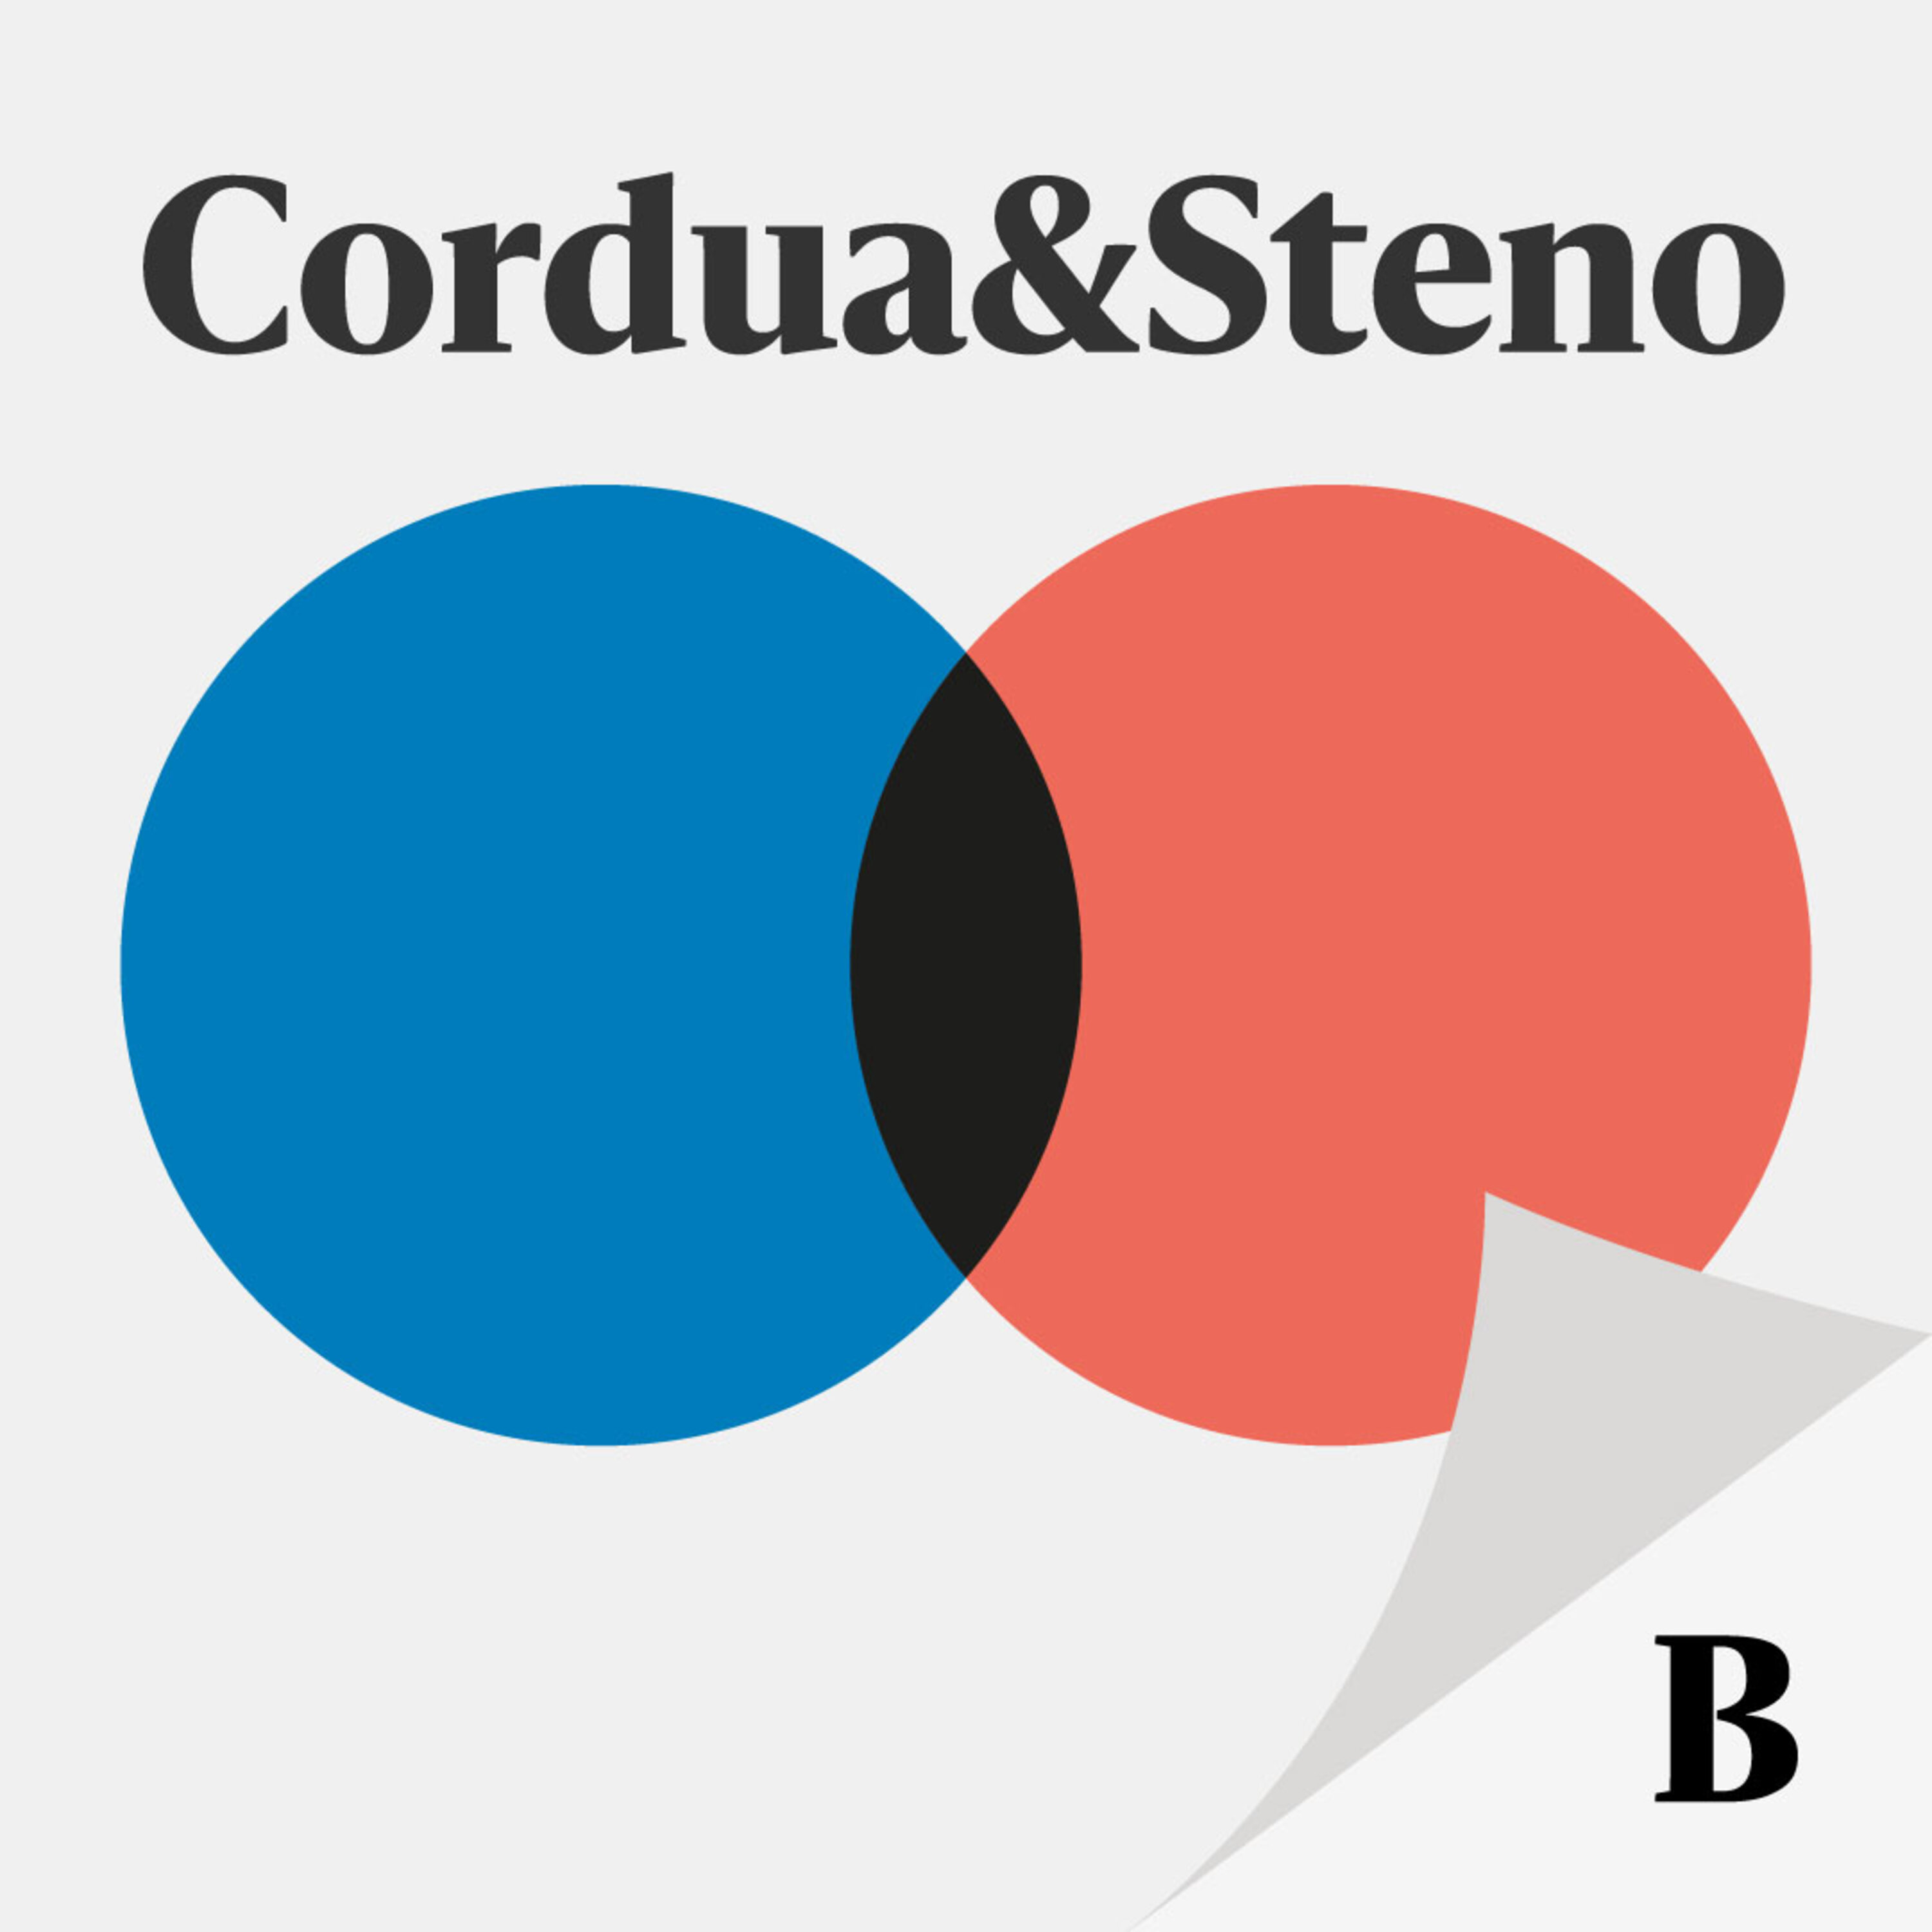 Cordua og Steno - Valgspecial: Skal 1g’erne slippe for karaktergivning?